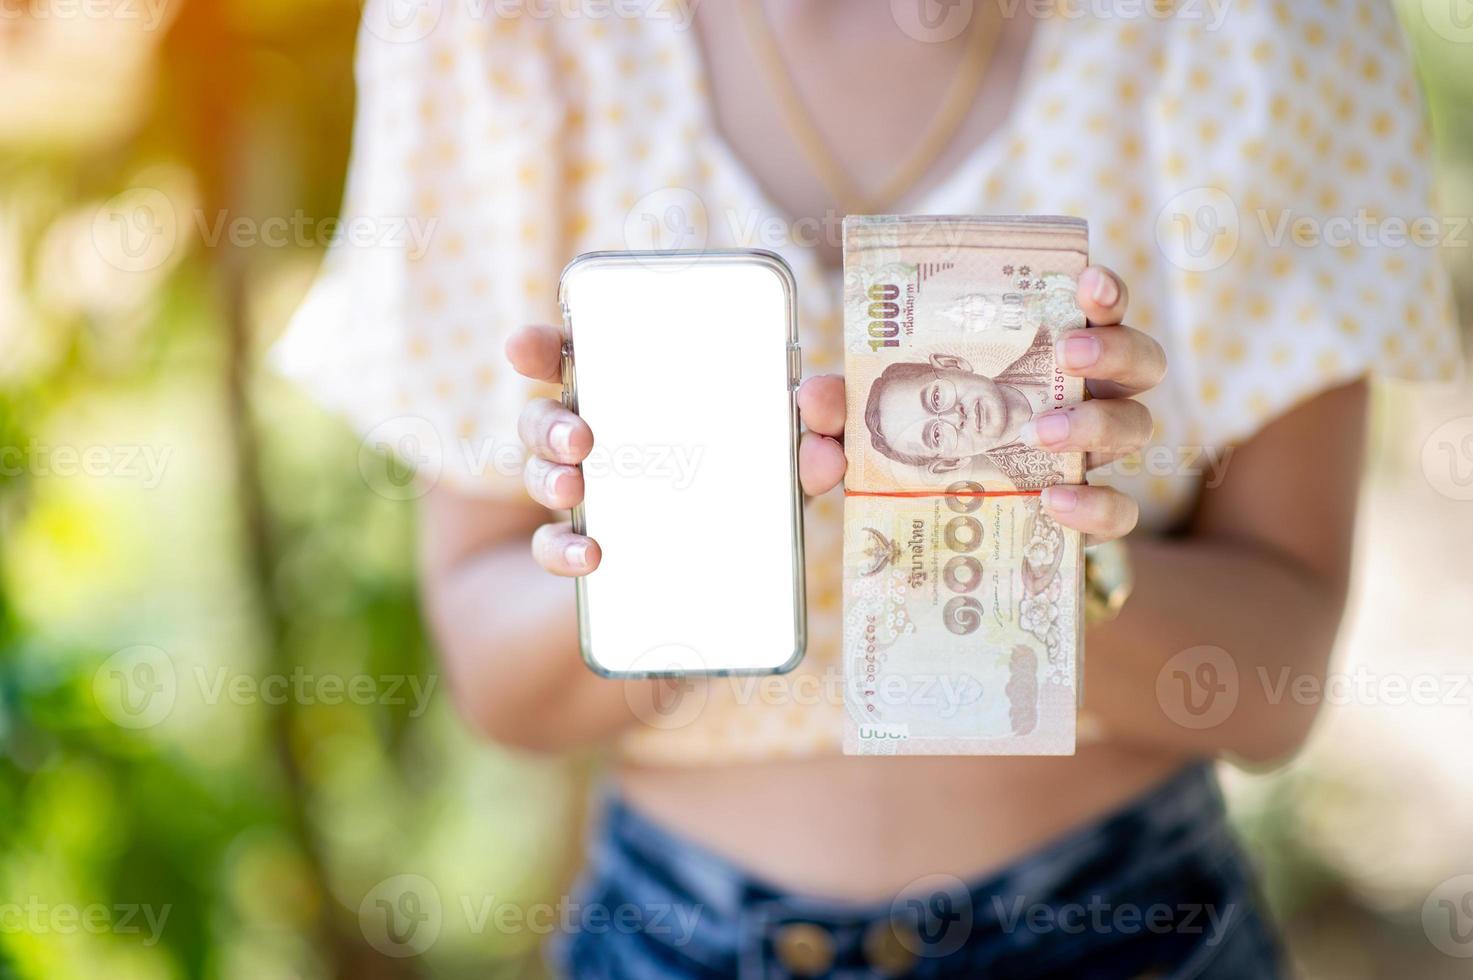 photos en gros plan et cartes bancaires utilisées pour les achats professionnels et de change. concept de main et d'argent